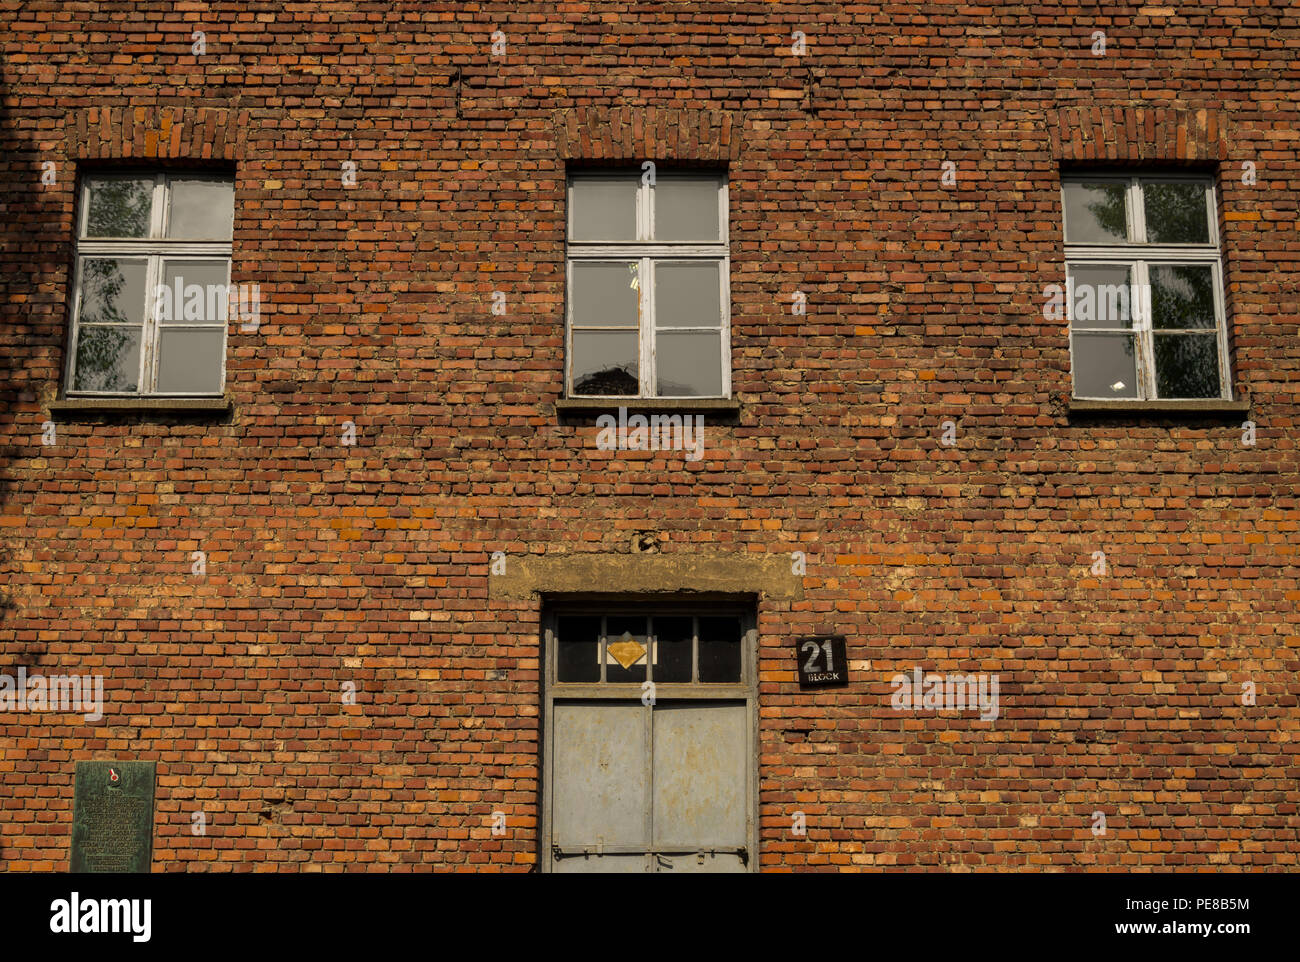 La facciata principale del blocco 21 situato in Auschwitz, campo di concentramento nazista in Oświęcim, Polonia. Edificio utilizzato dal dottor Mengele per sperimentare con le persone. Foto Stock